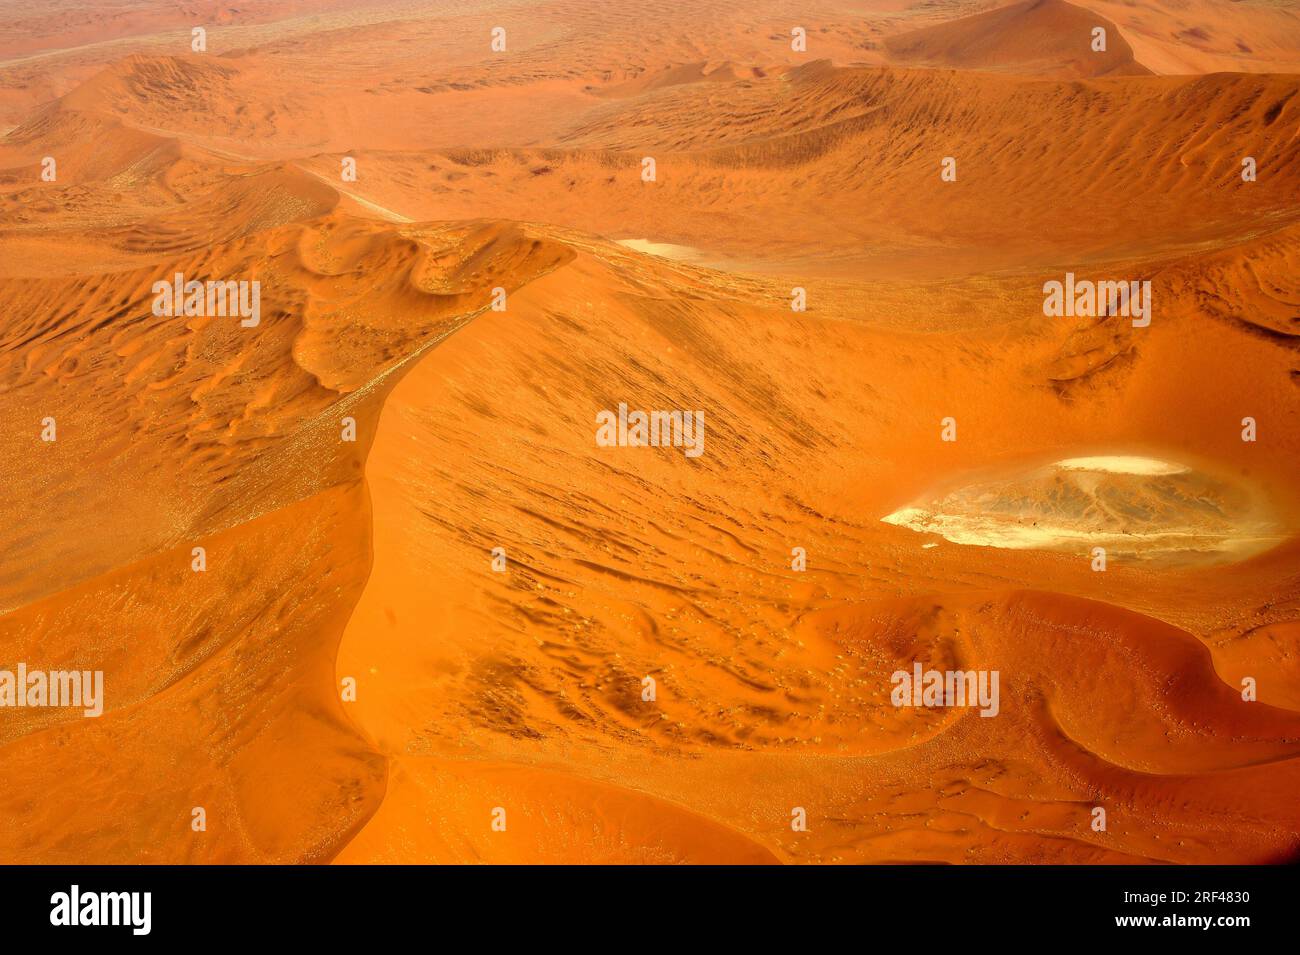 Fotografia aerea delle dune del deserto del Namib con una teglia (bacino idrografico endorheico). Dune è una collina di sabbia sciolta trasportata dal vento. Namibia. Foto Stock